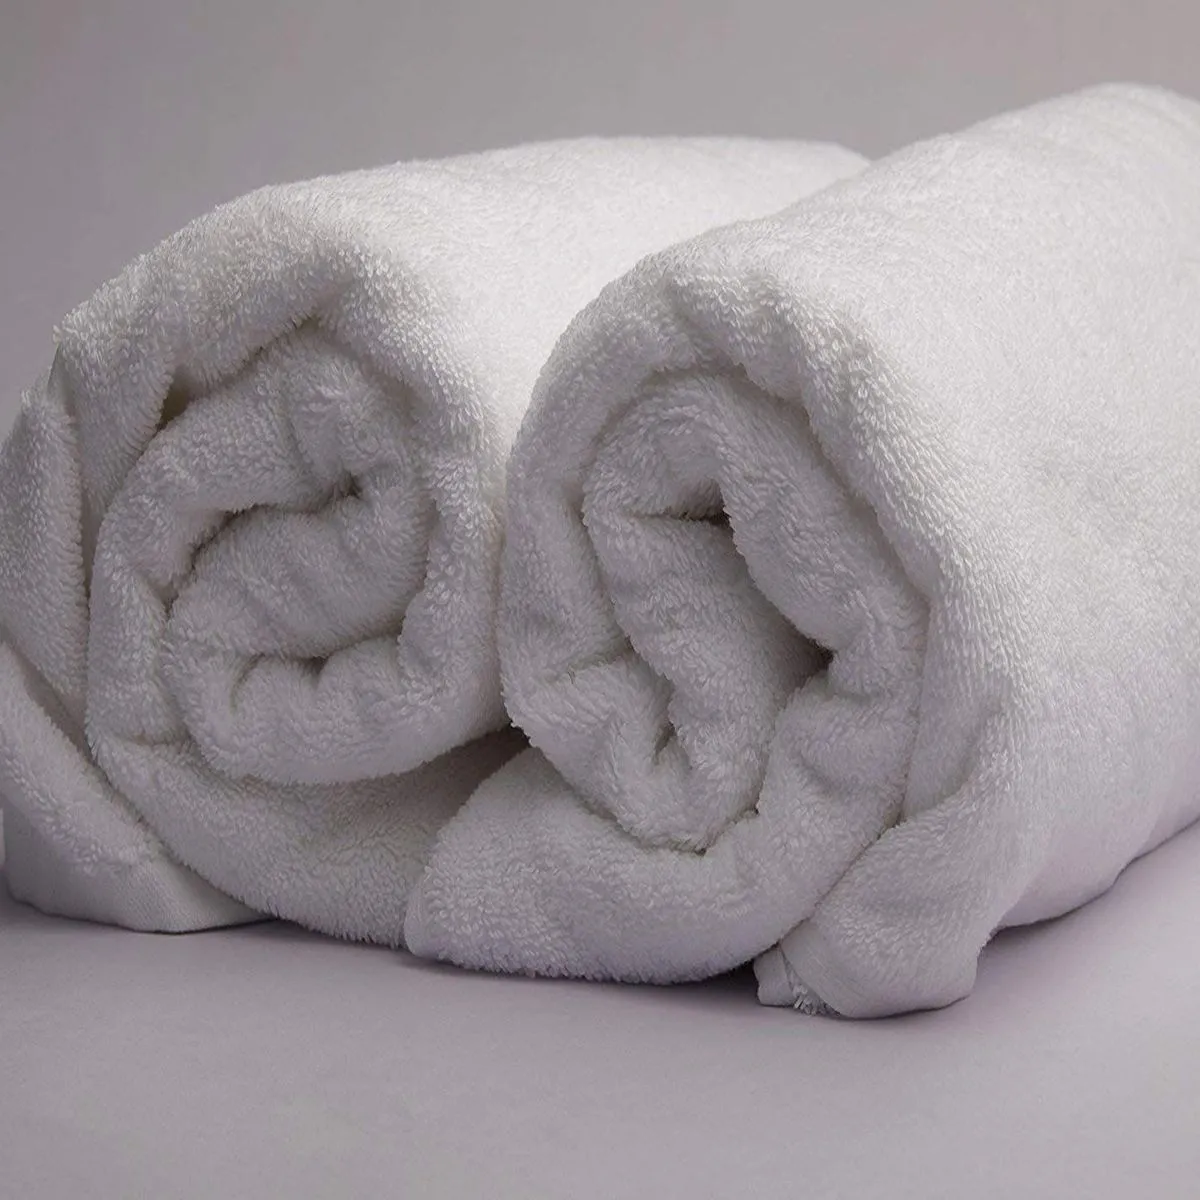 Cotton Bath Towels (Set of 2) by Pushp Linen